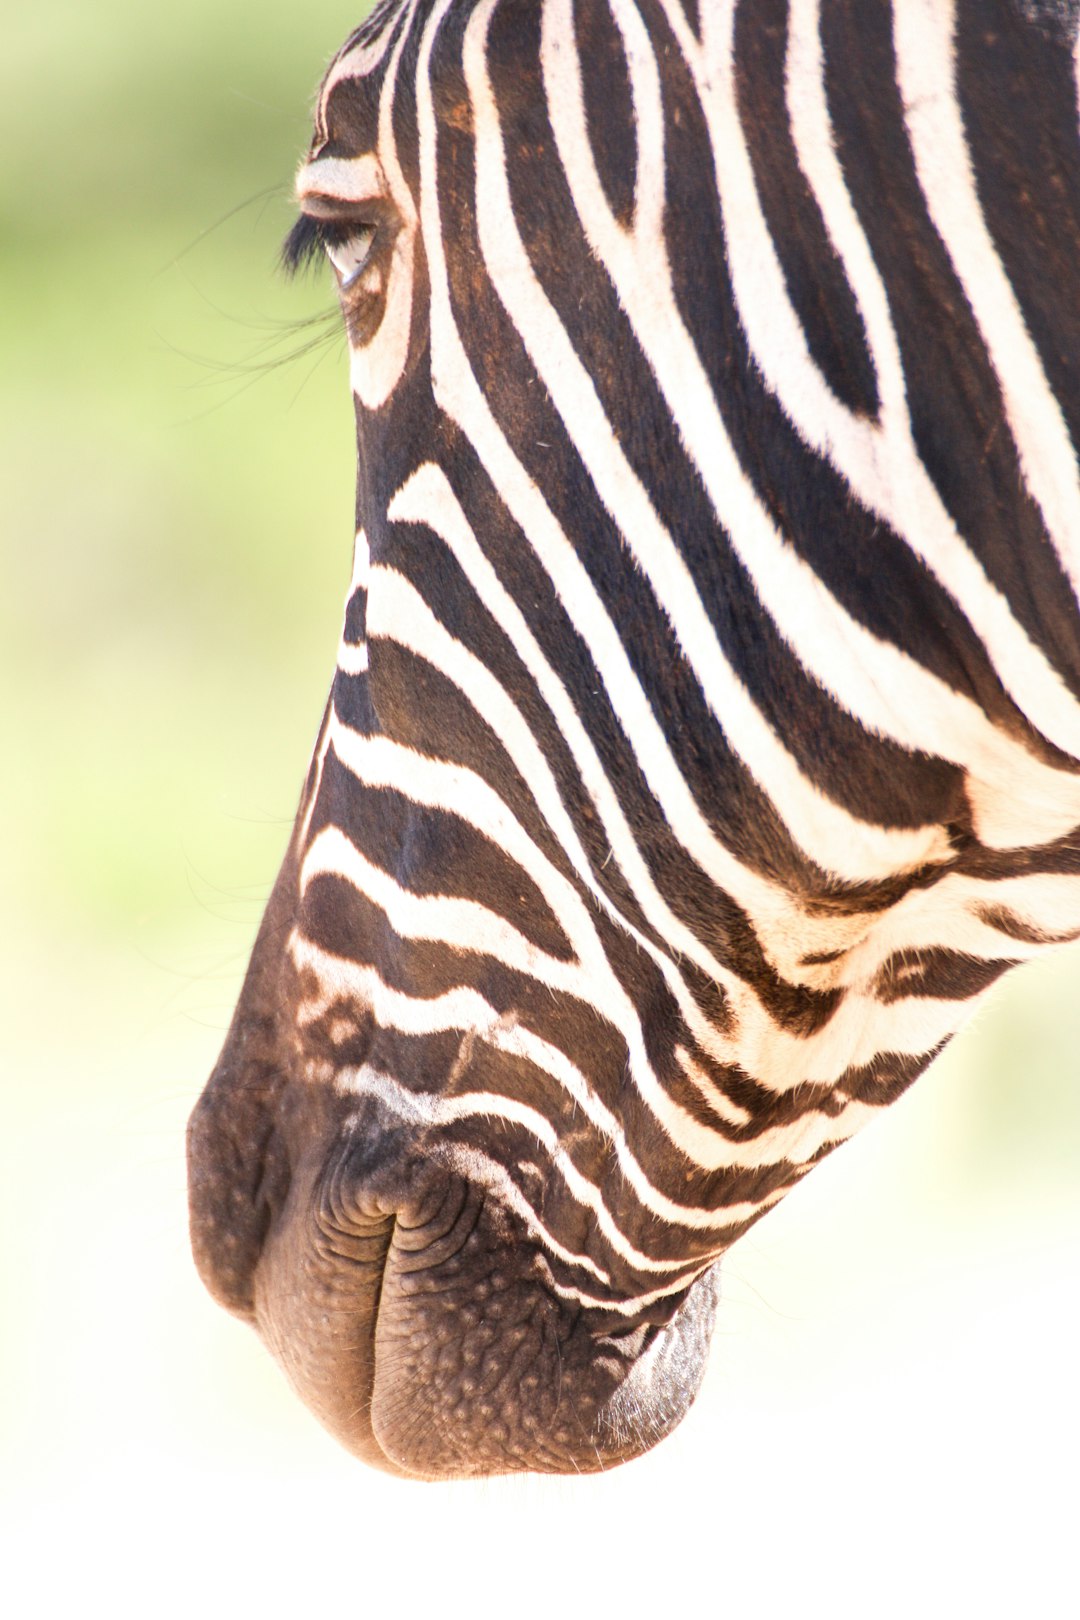 black and white zebra during daytime